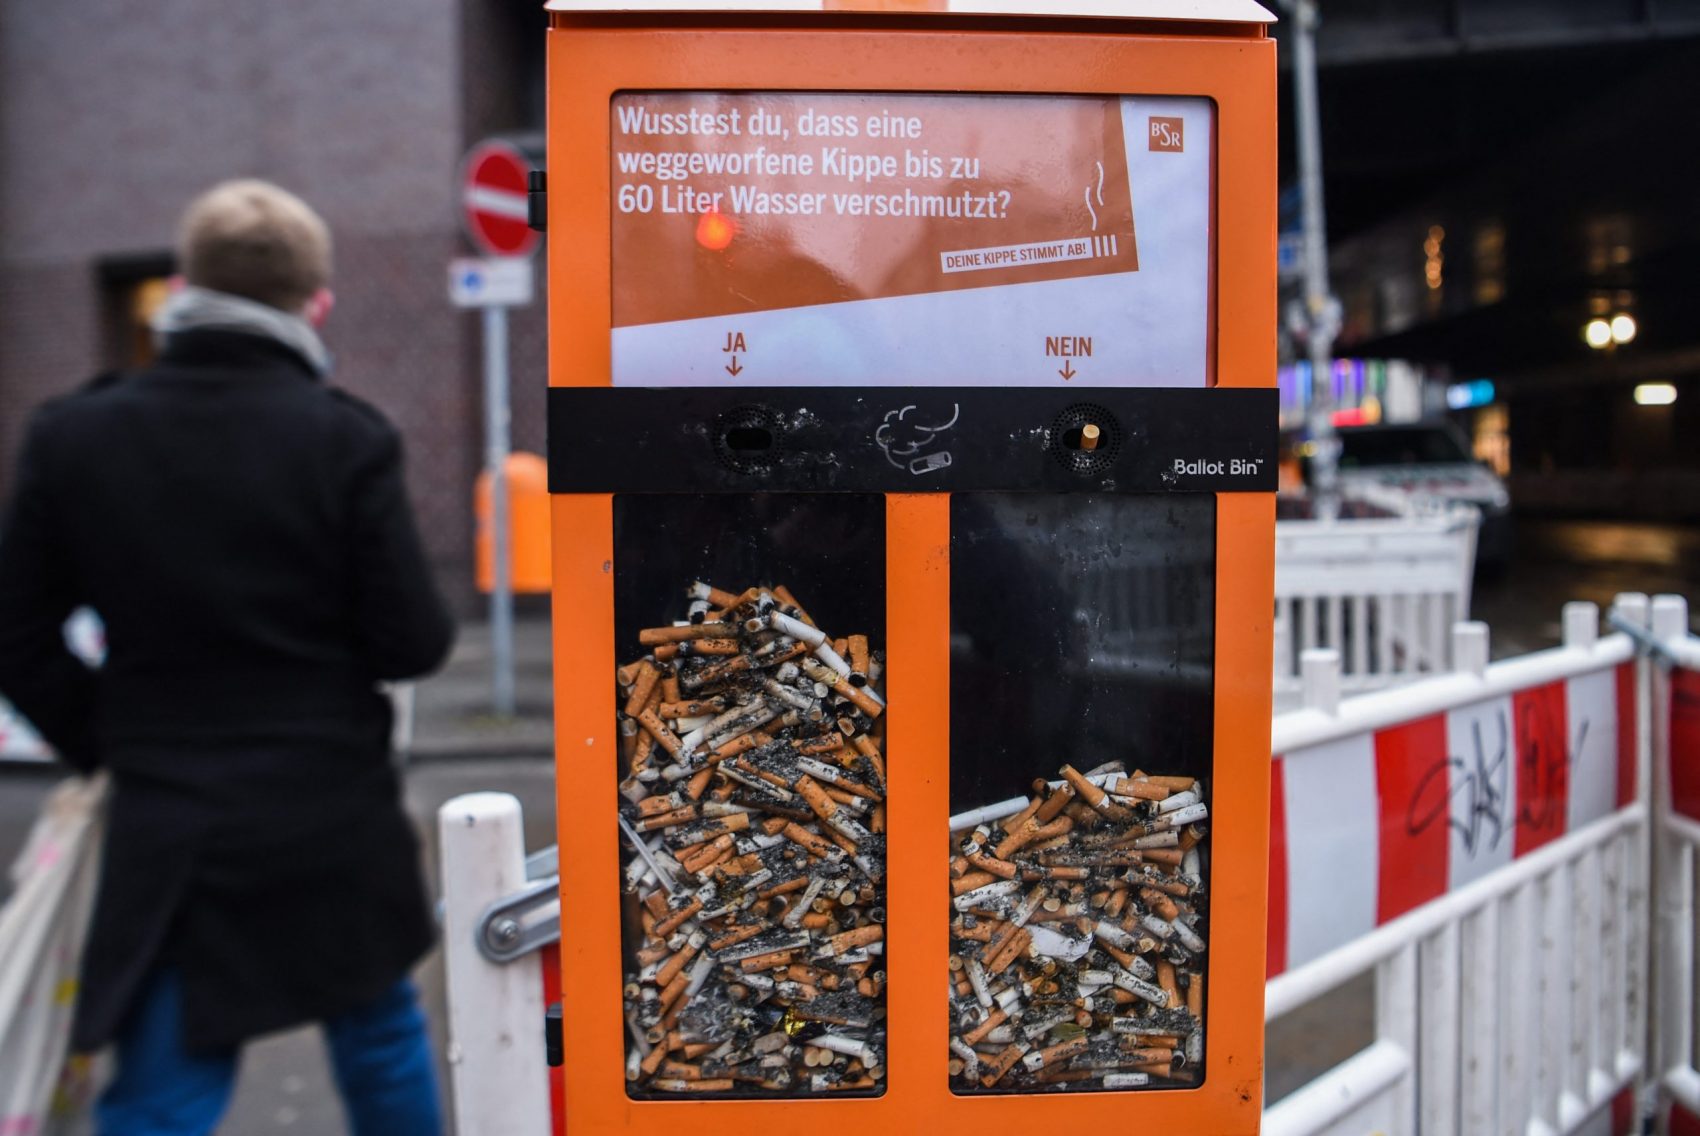 Em Berlim, uma lixeira é transformada em urna. Os votos são as guimbas de cigarro. E a pergunta? "Você sabia que uma bituca descartada polui até 60 litros de água?" Foto Kira Hofmann/DPA via AFP